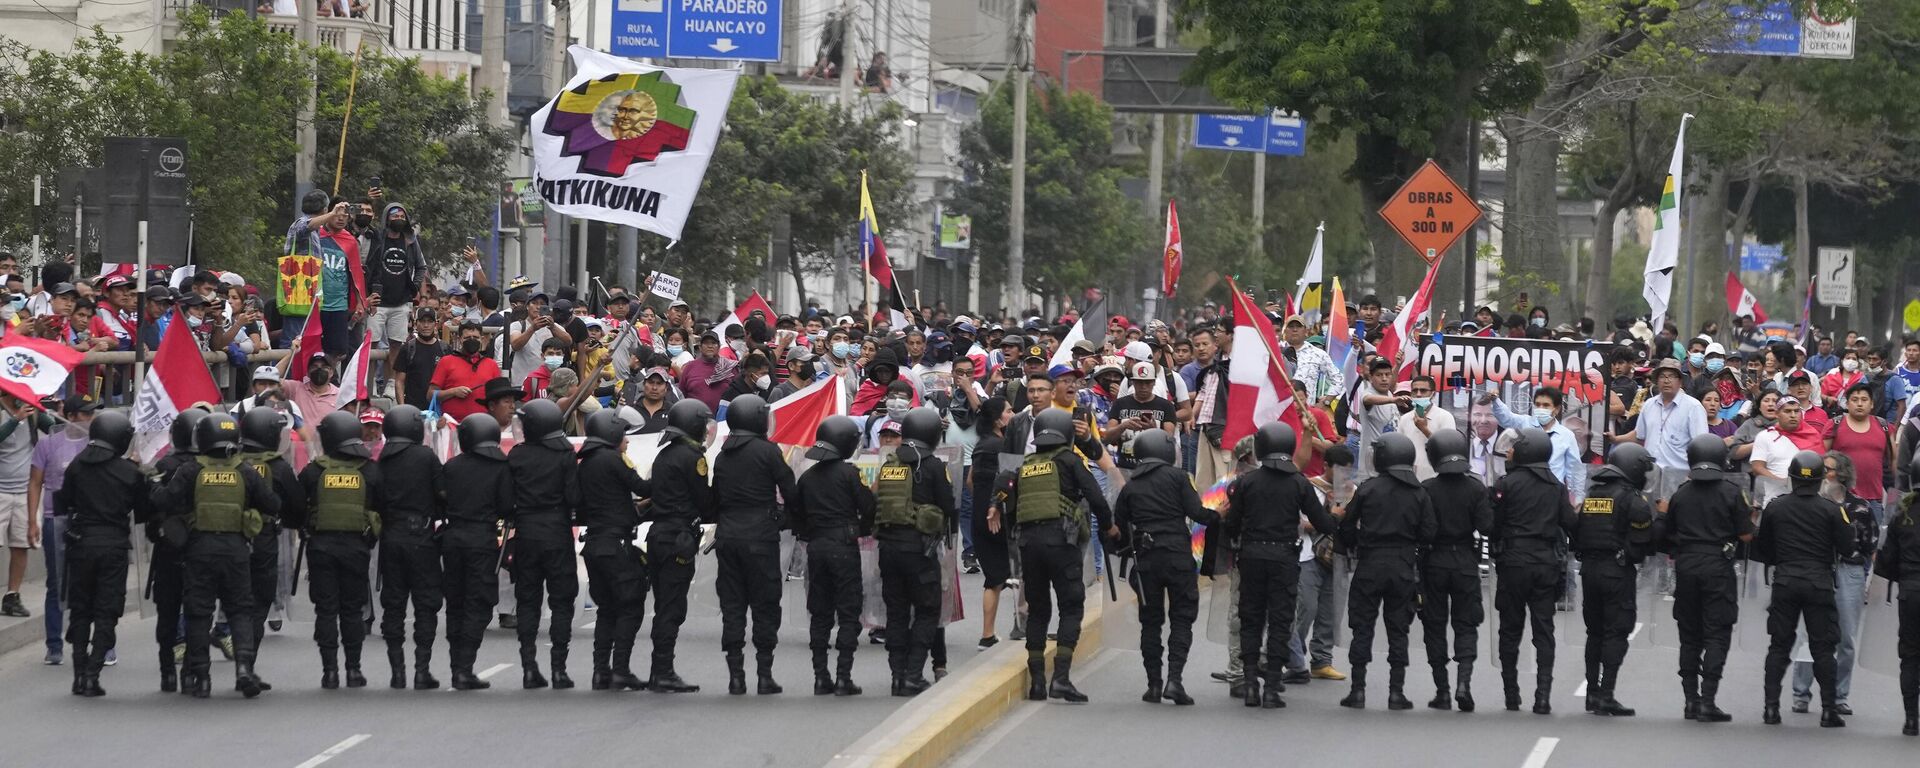 Manifestantes antigovernamentais que viajaram para a capital de todo o país são confrontados por uma linha de tropa de choque durante uma marcha contra a presidente peruana Dina Boluarte em Lima, Peru, 18 de janeiro de 2023 - Sputnik Brasil, 1920, 08.02.2023